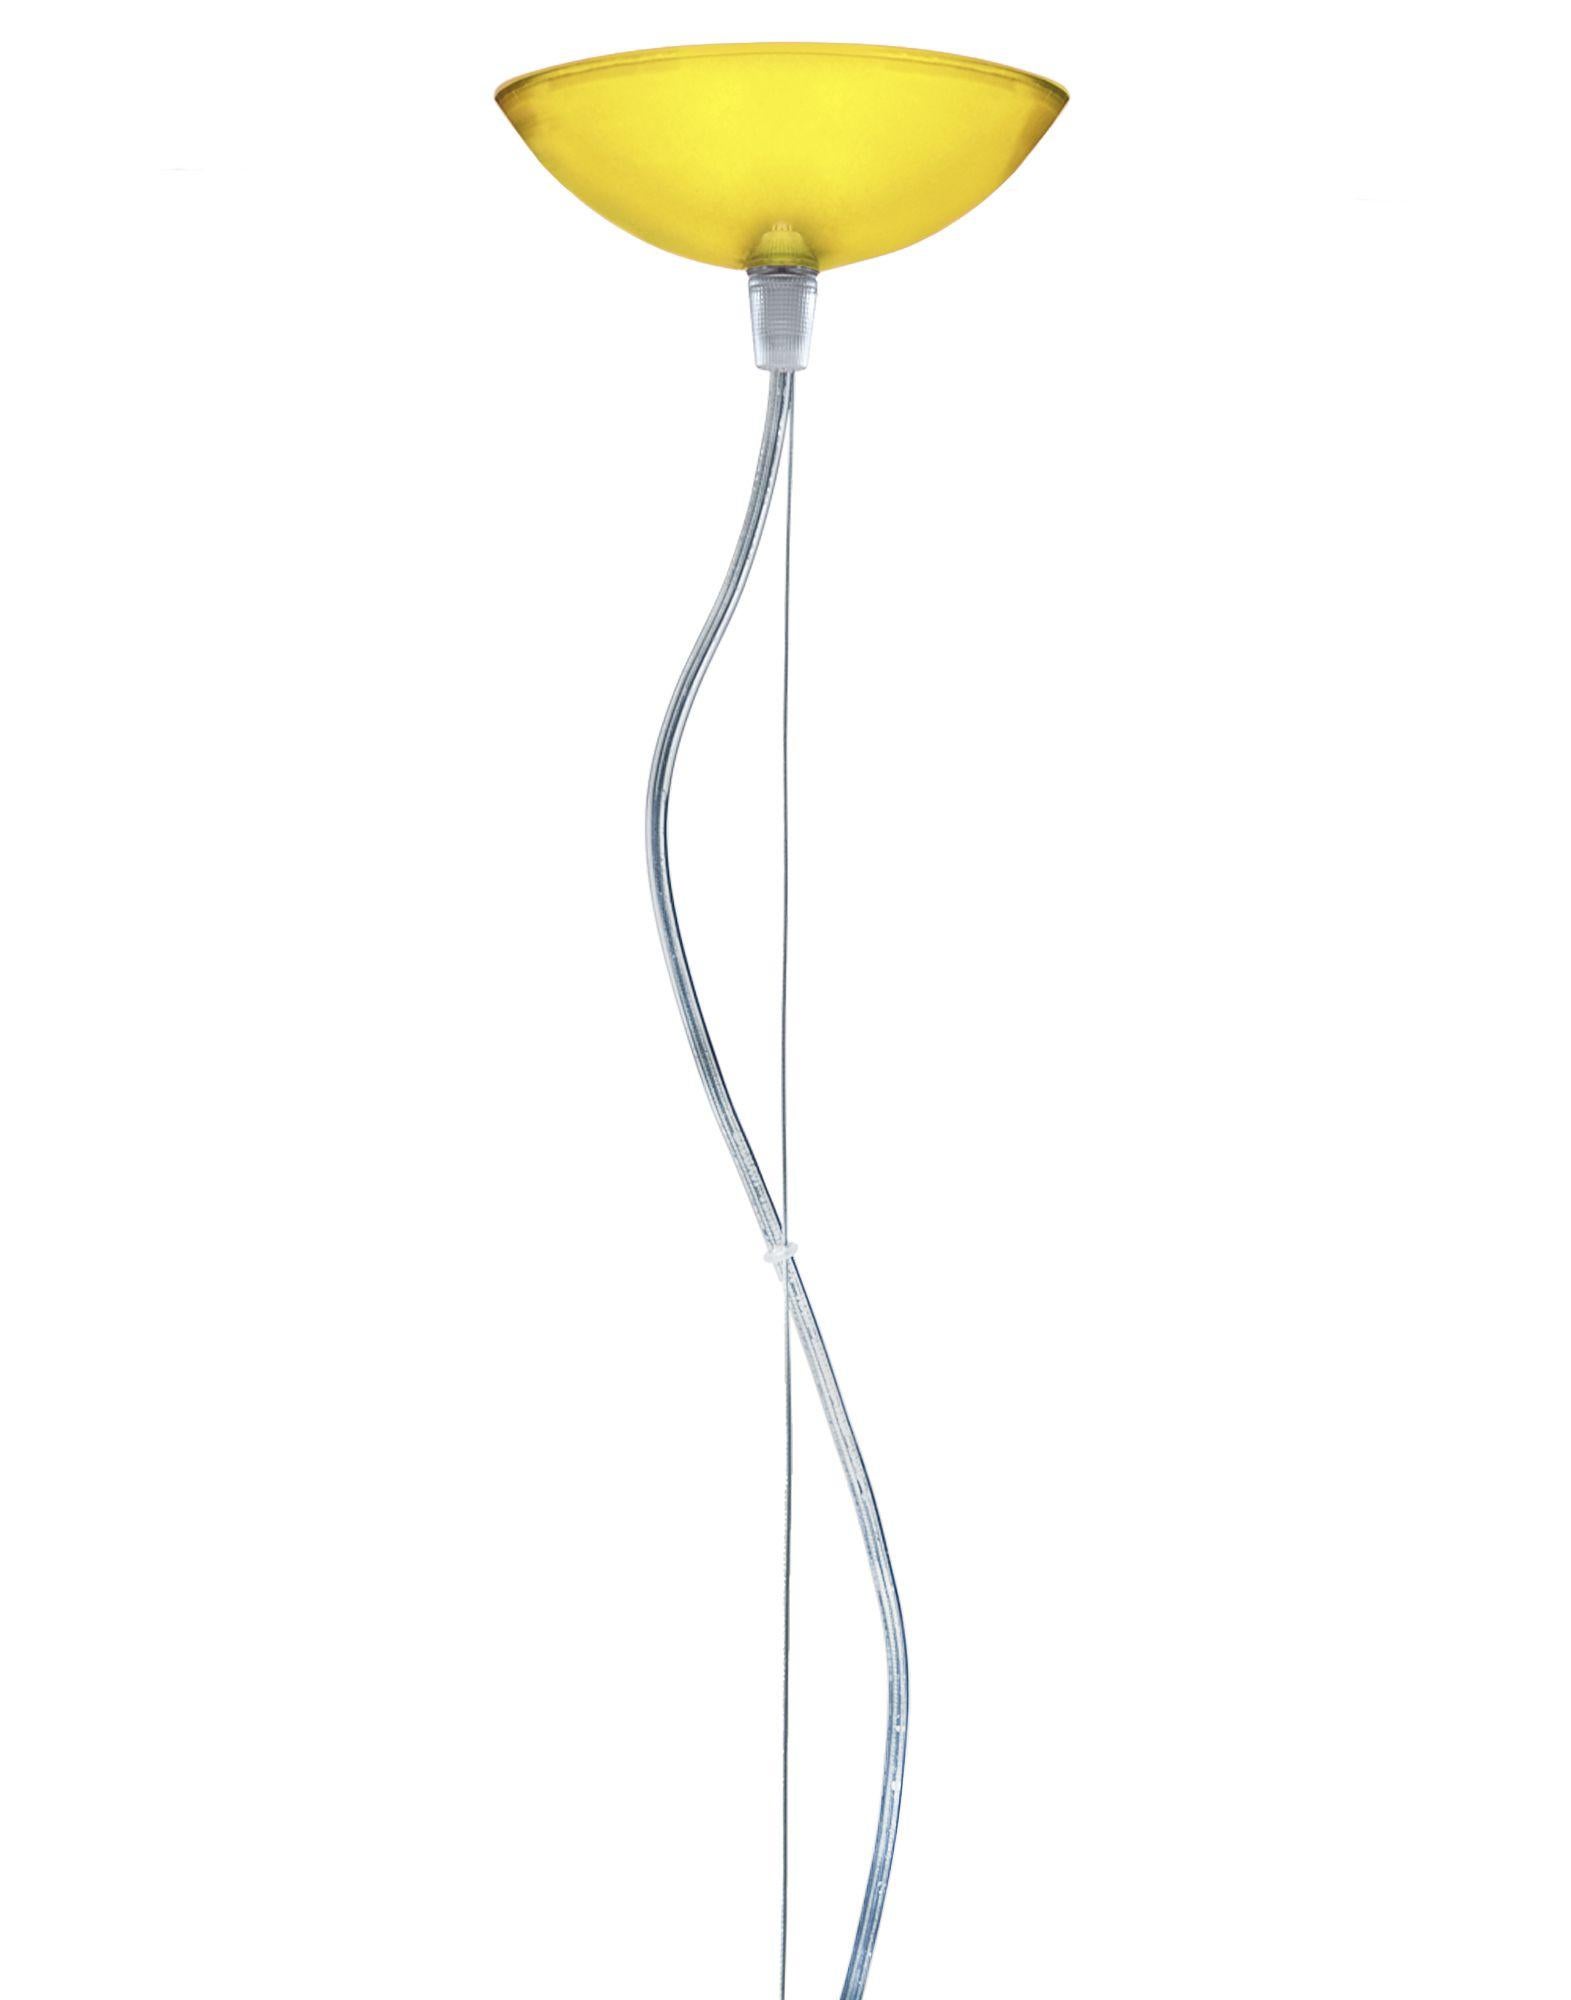 FL/Y lampe pendante petite en jaune. Il s'agit d'une collection de lampes à suspension conçue par Ferruccio Laviani en 2002.

Dimensions : Hauteur de l'abat-jour : 11 po ; diamètre : 15 po ; poids unitaire : 1,08 kg. Fabriqué en : PMMA. Montage